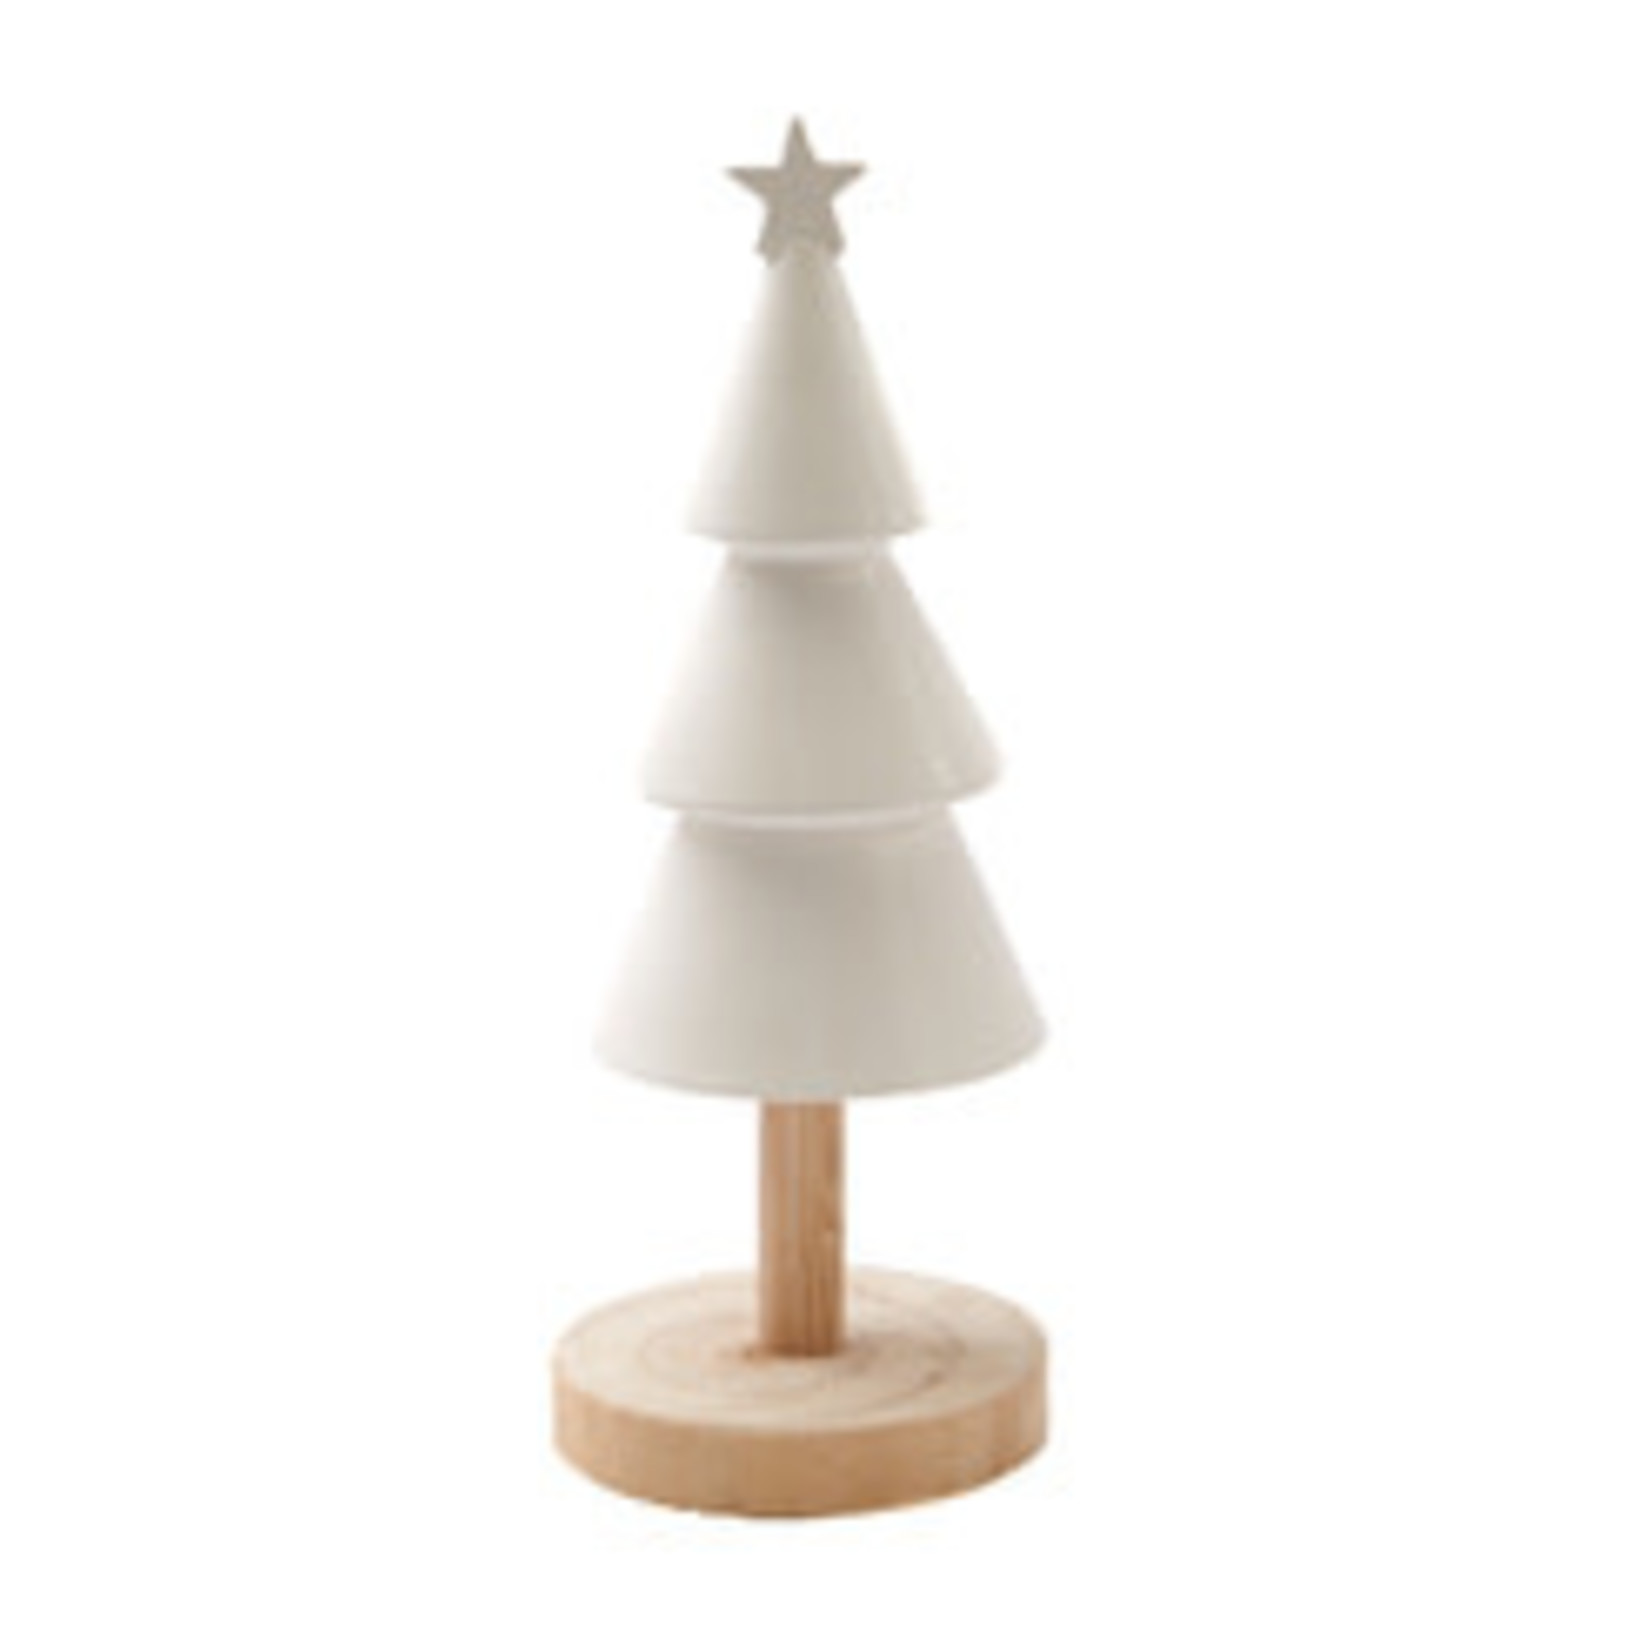 Kerstboom op houten voet - Keramiek - Wit - 29,5cm